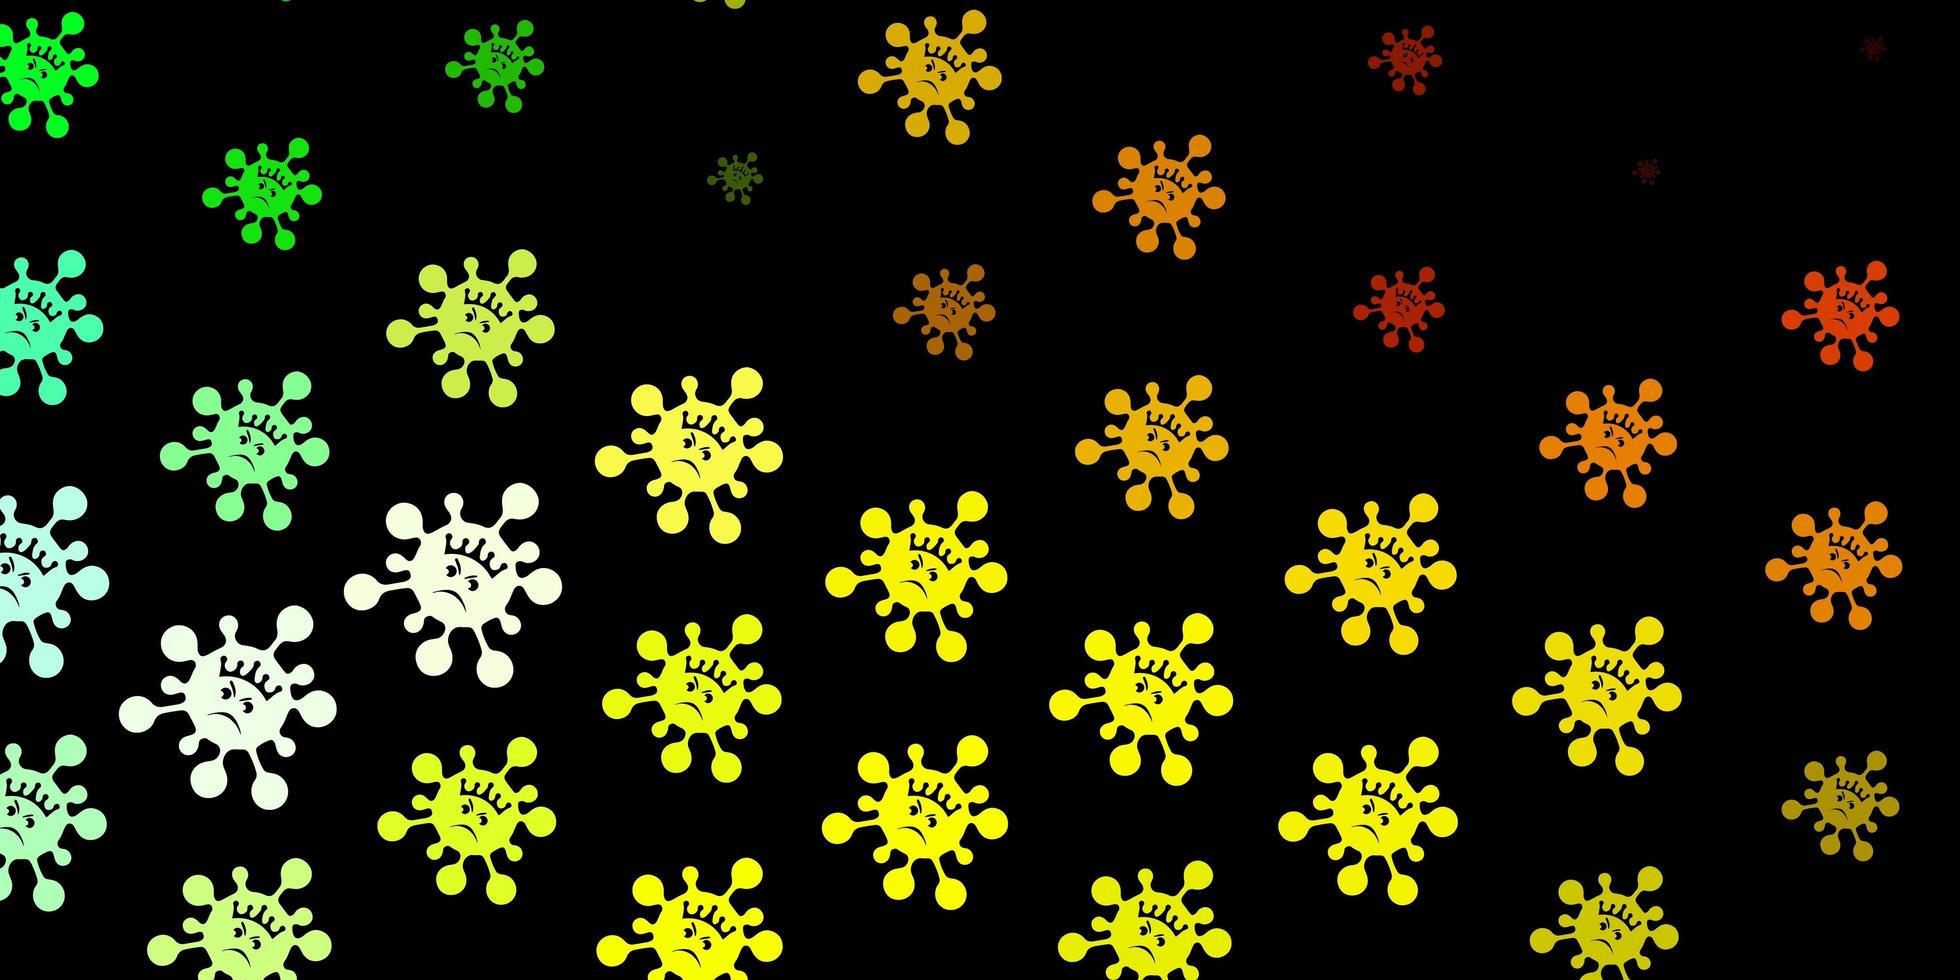 mörkgrön, gul vektorstruktur med sjukdomssymboler vektor